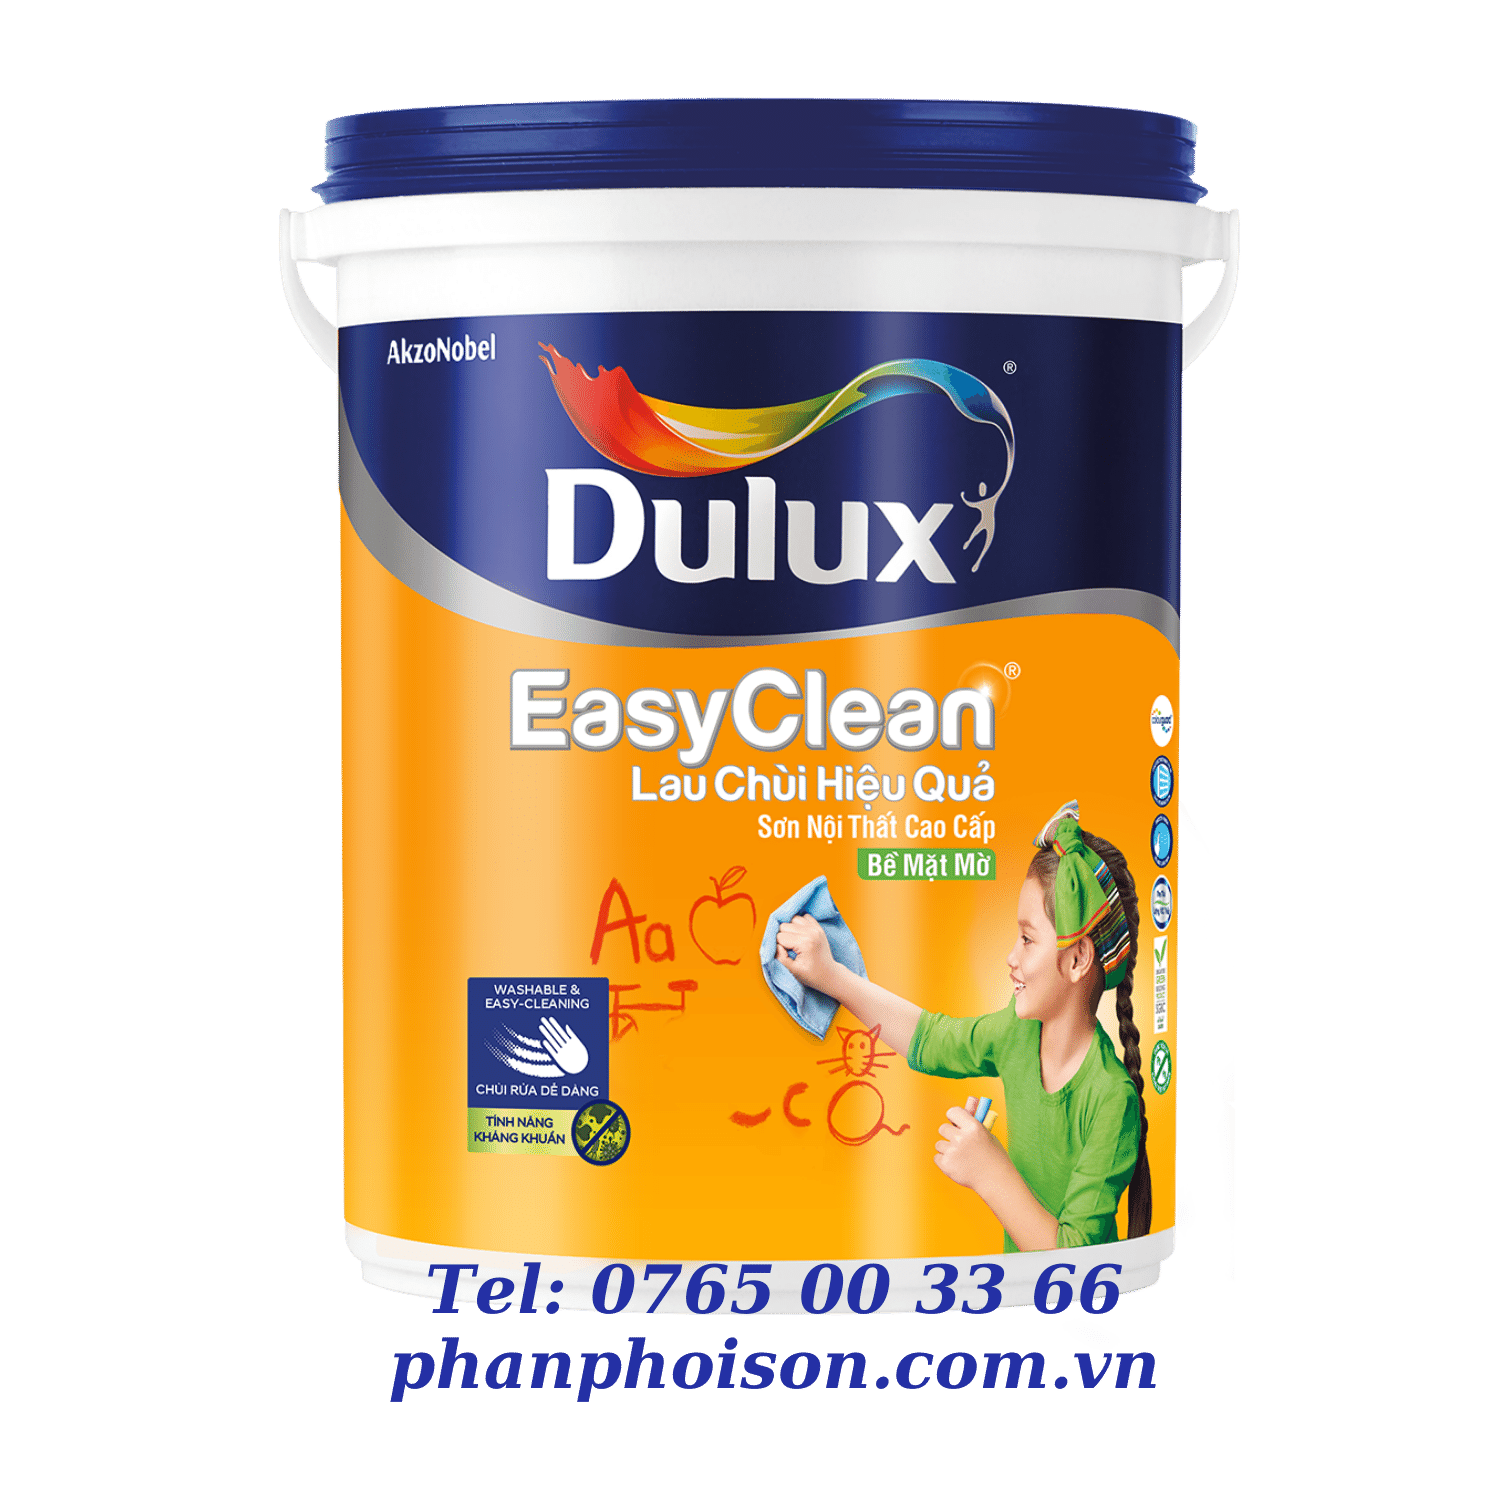 Dulux EasyClean chống bám bẩn, kháng Vius E017B